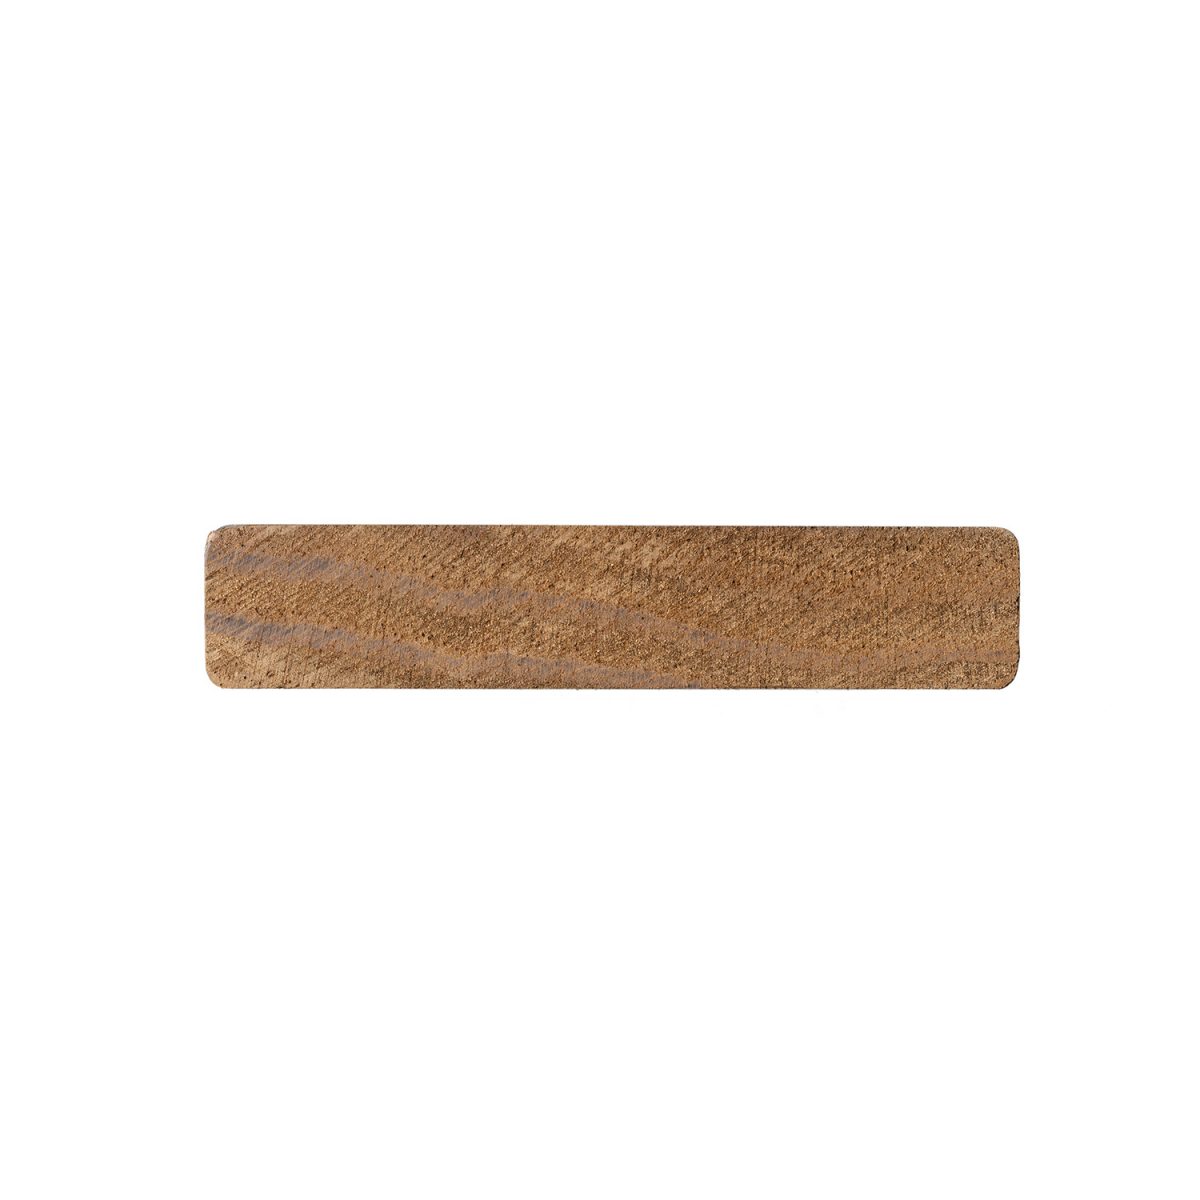 Lama de madera termotratada S4S